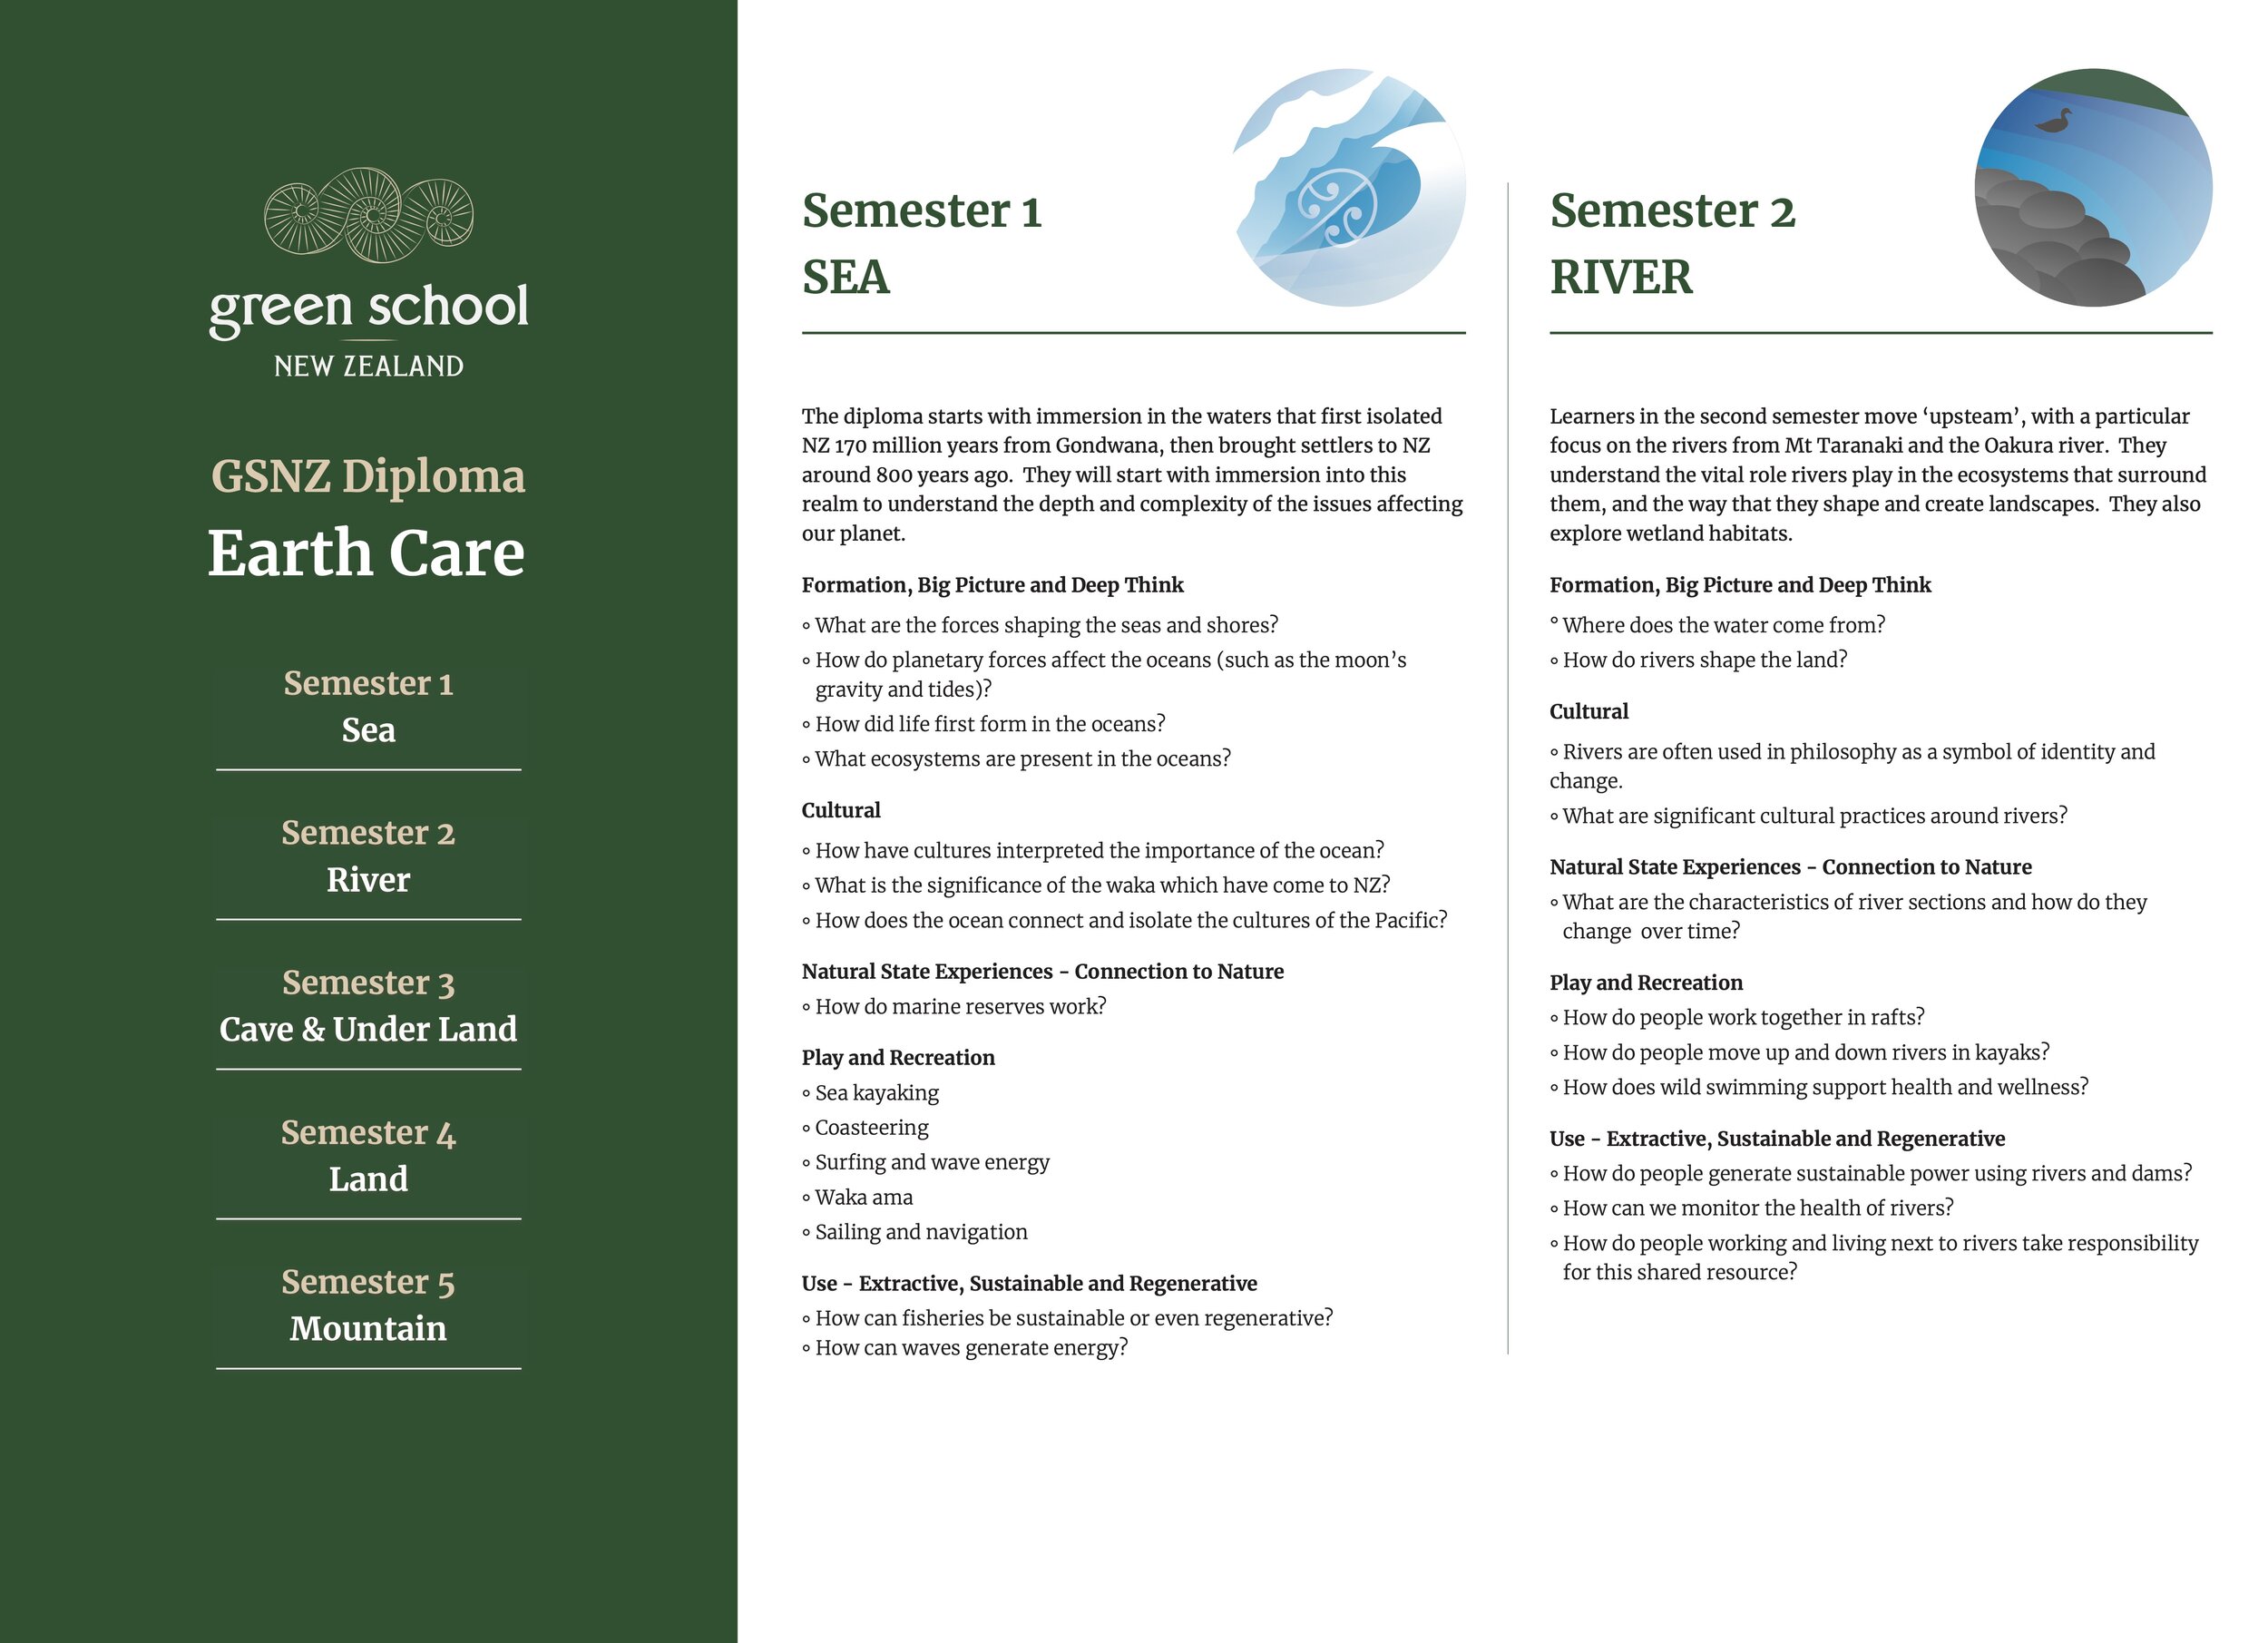 GSNZ_Diploma Earth Care – A1-2.jpg